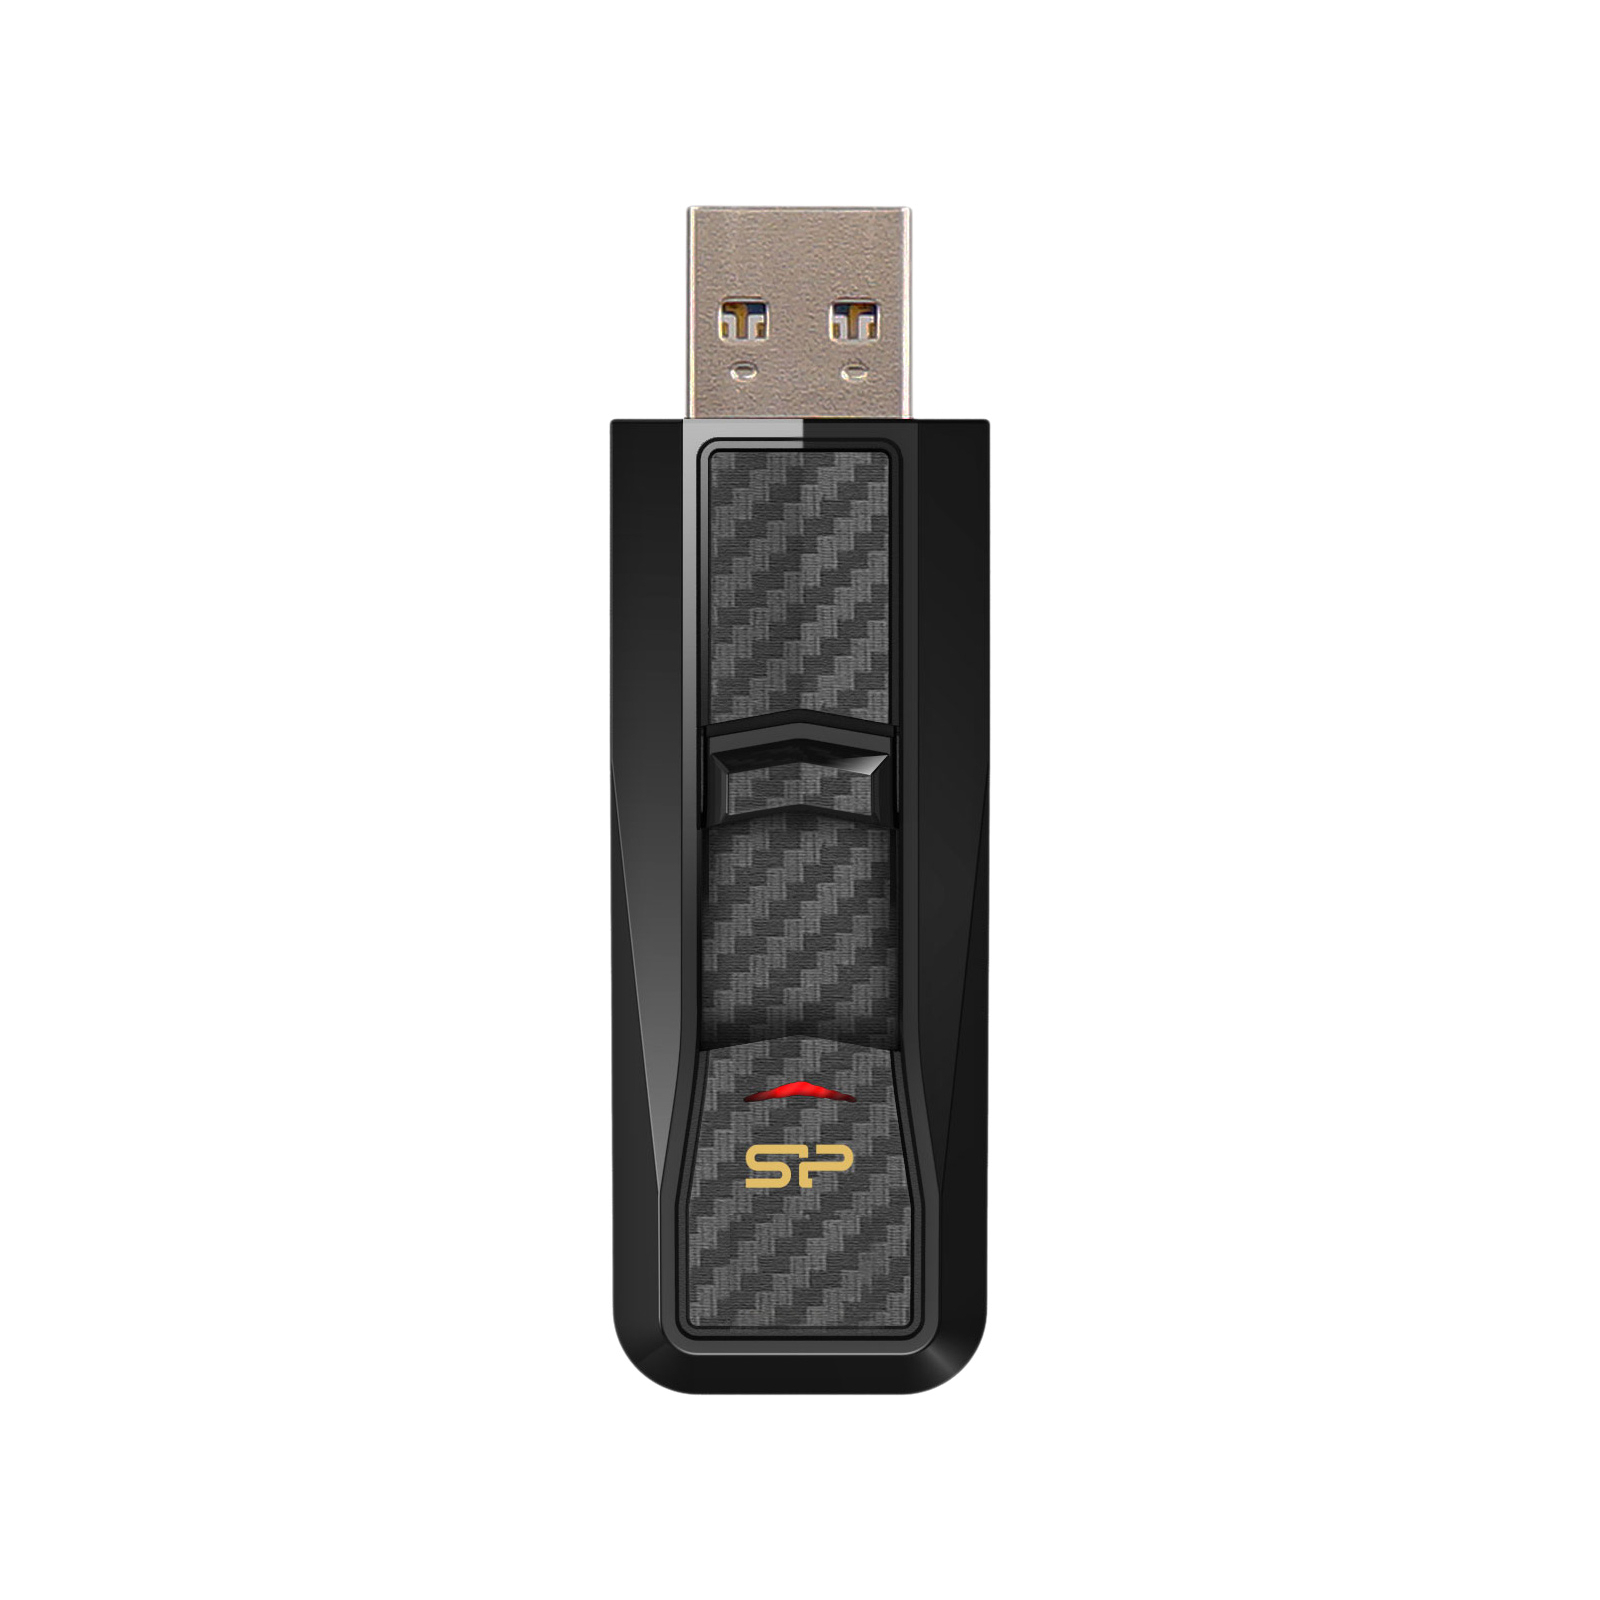 USB флеш накопичувач Silicon Power 16Gb Blaze B50 Red USB 3.0 (SP016GBUF3B50V1R) зображення 2